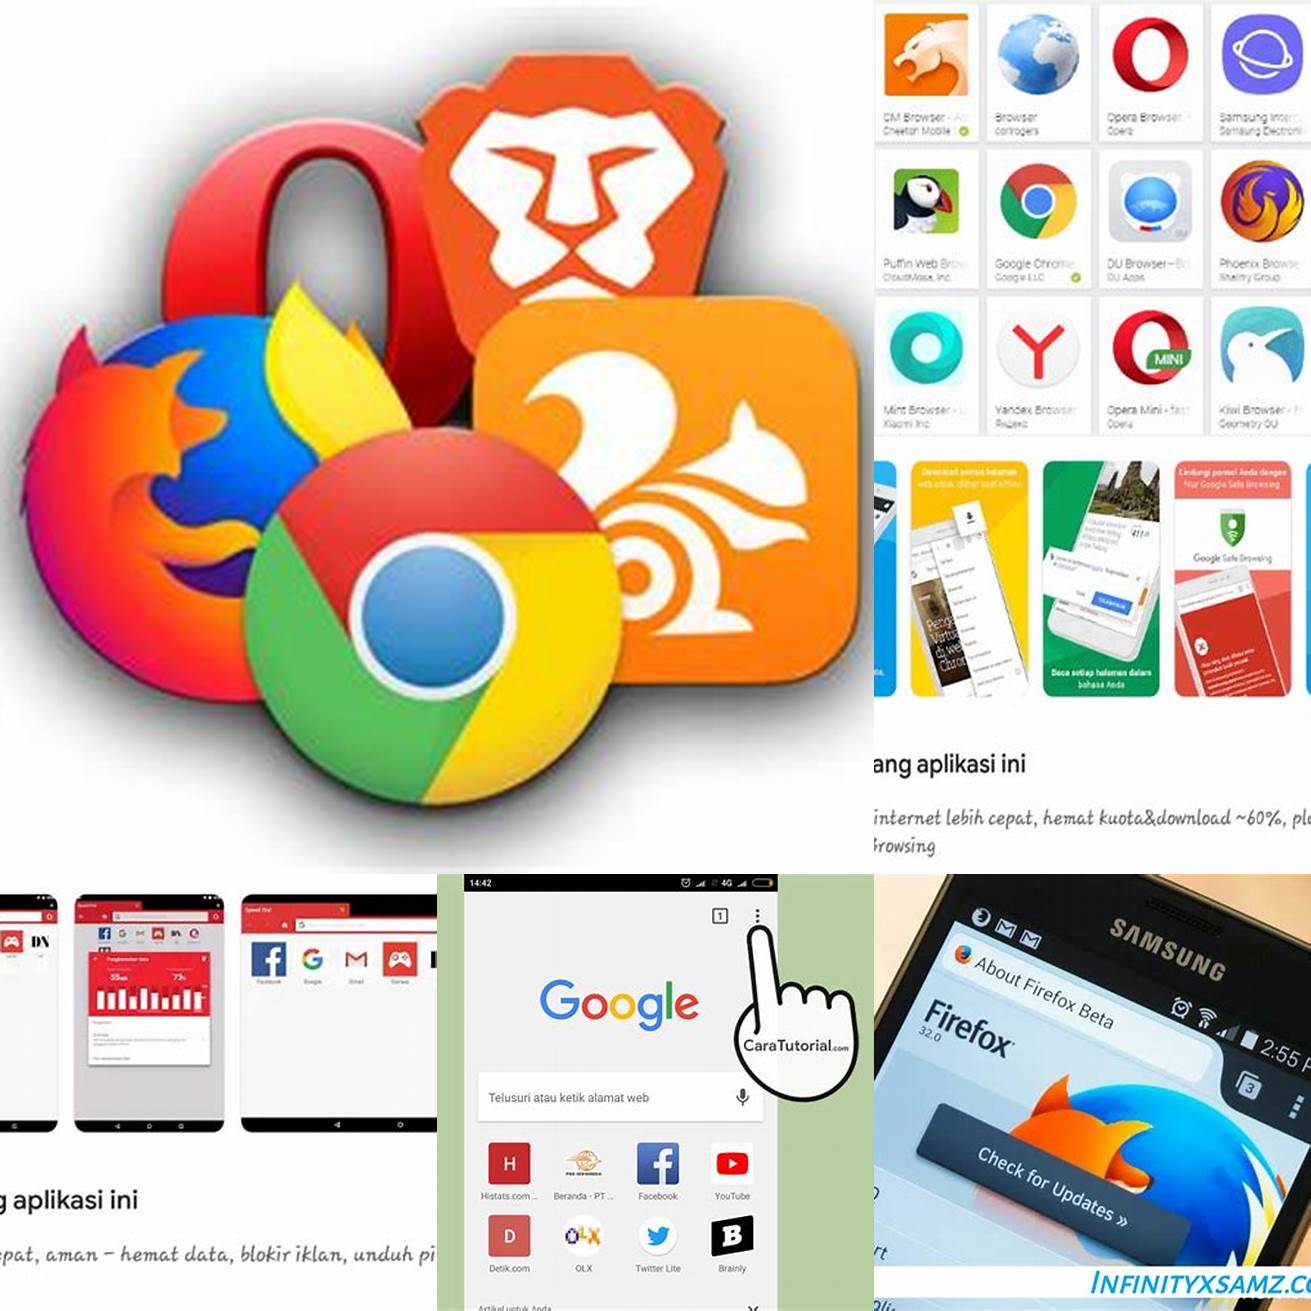 Buka browser di perangkat Android Anda